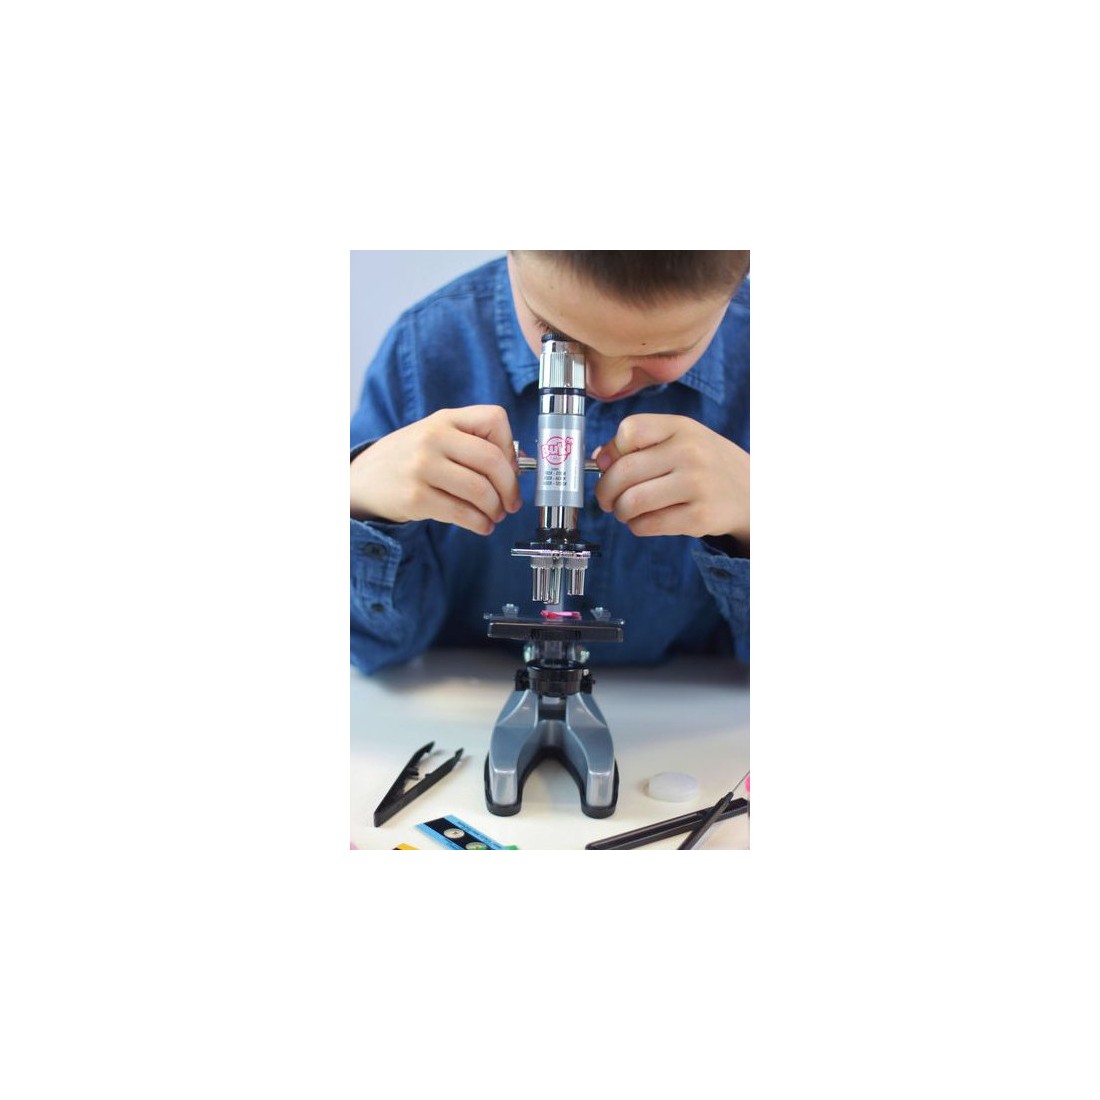 Nouveau microscope Buki  #NosJouets Venez découvrir notre nouveau